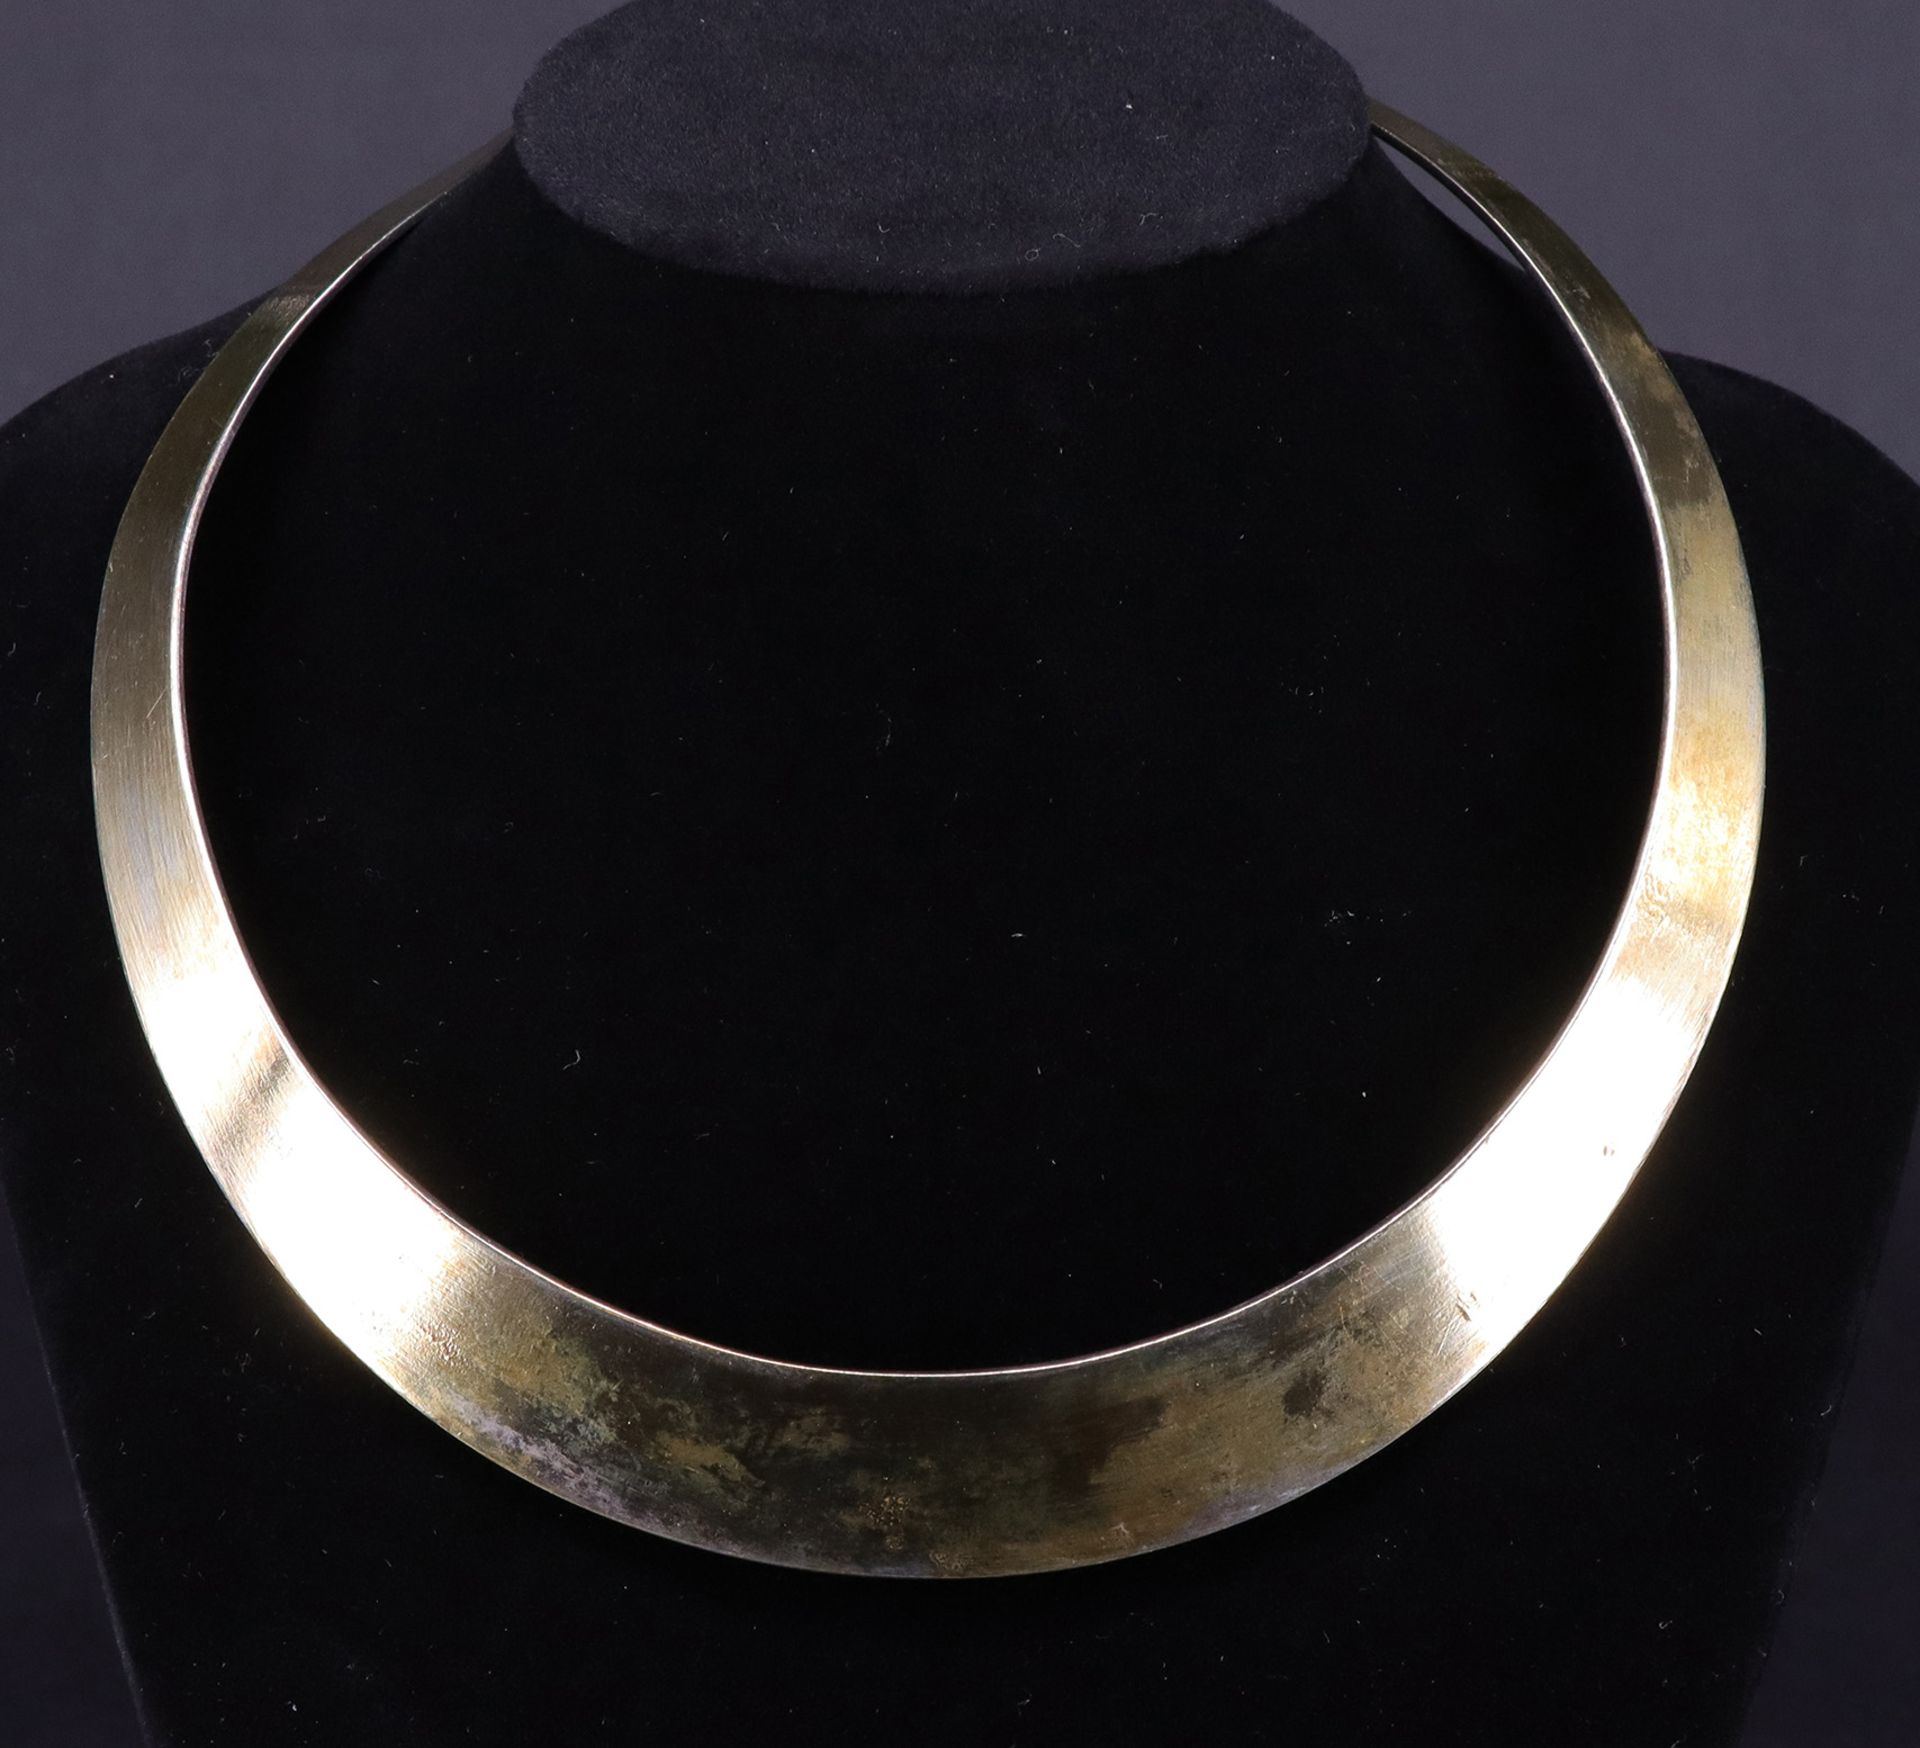 Collier mit aufwändig gearbeiteten Halbedelsteinen / necklace with semi-precious stones. Topas, - Image 4 of 6